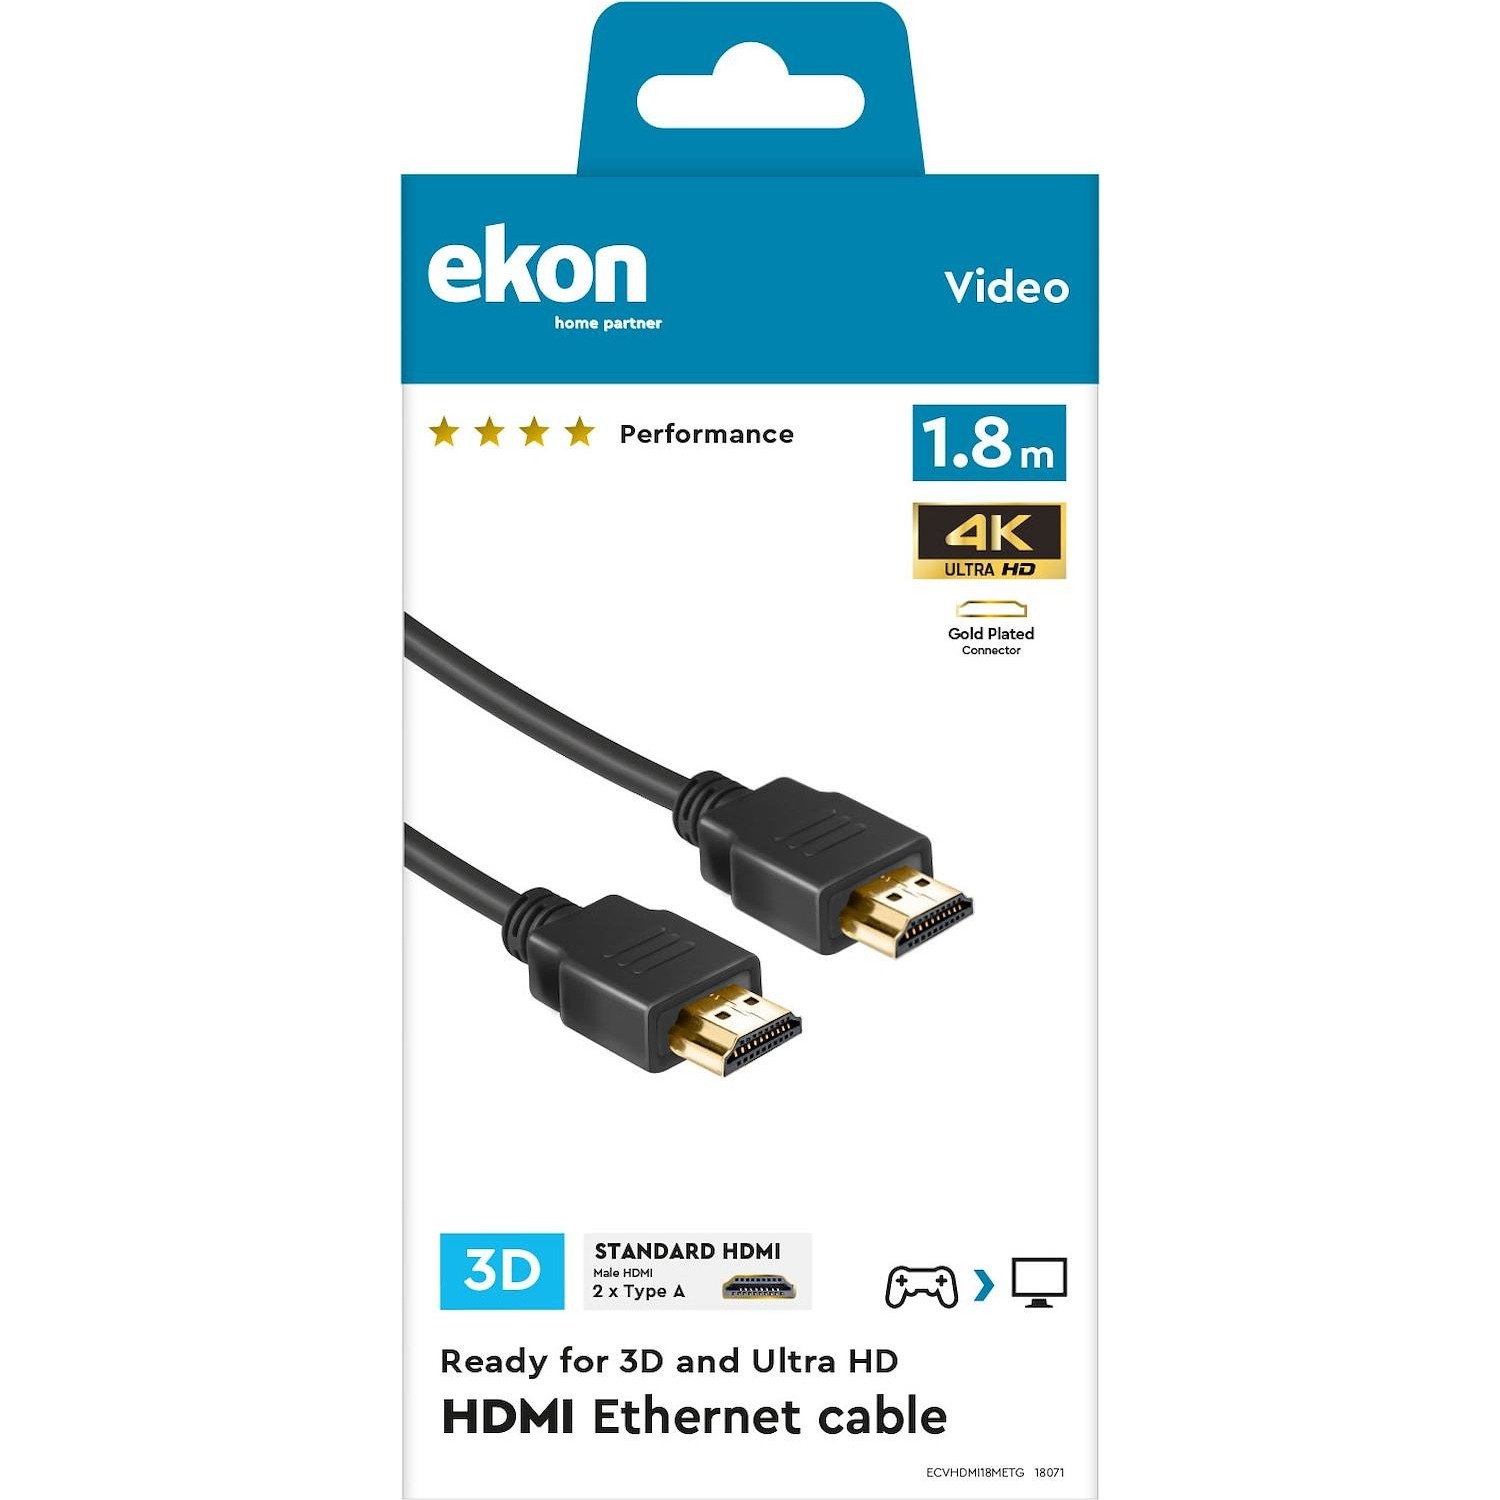 Immagine per Cavo HDMI v.2.0 Ekon alta velocità con canale     Ethernet e nuclei in ferrite anti disturbo, da DIMOStore